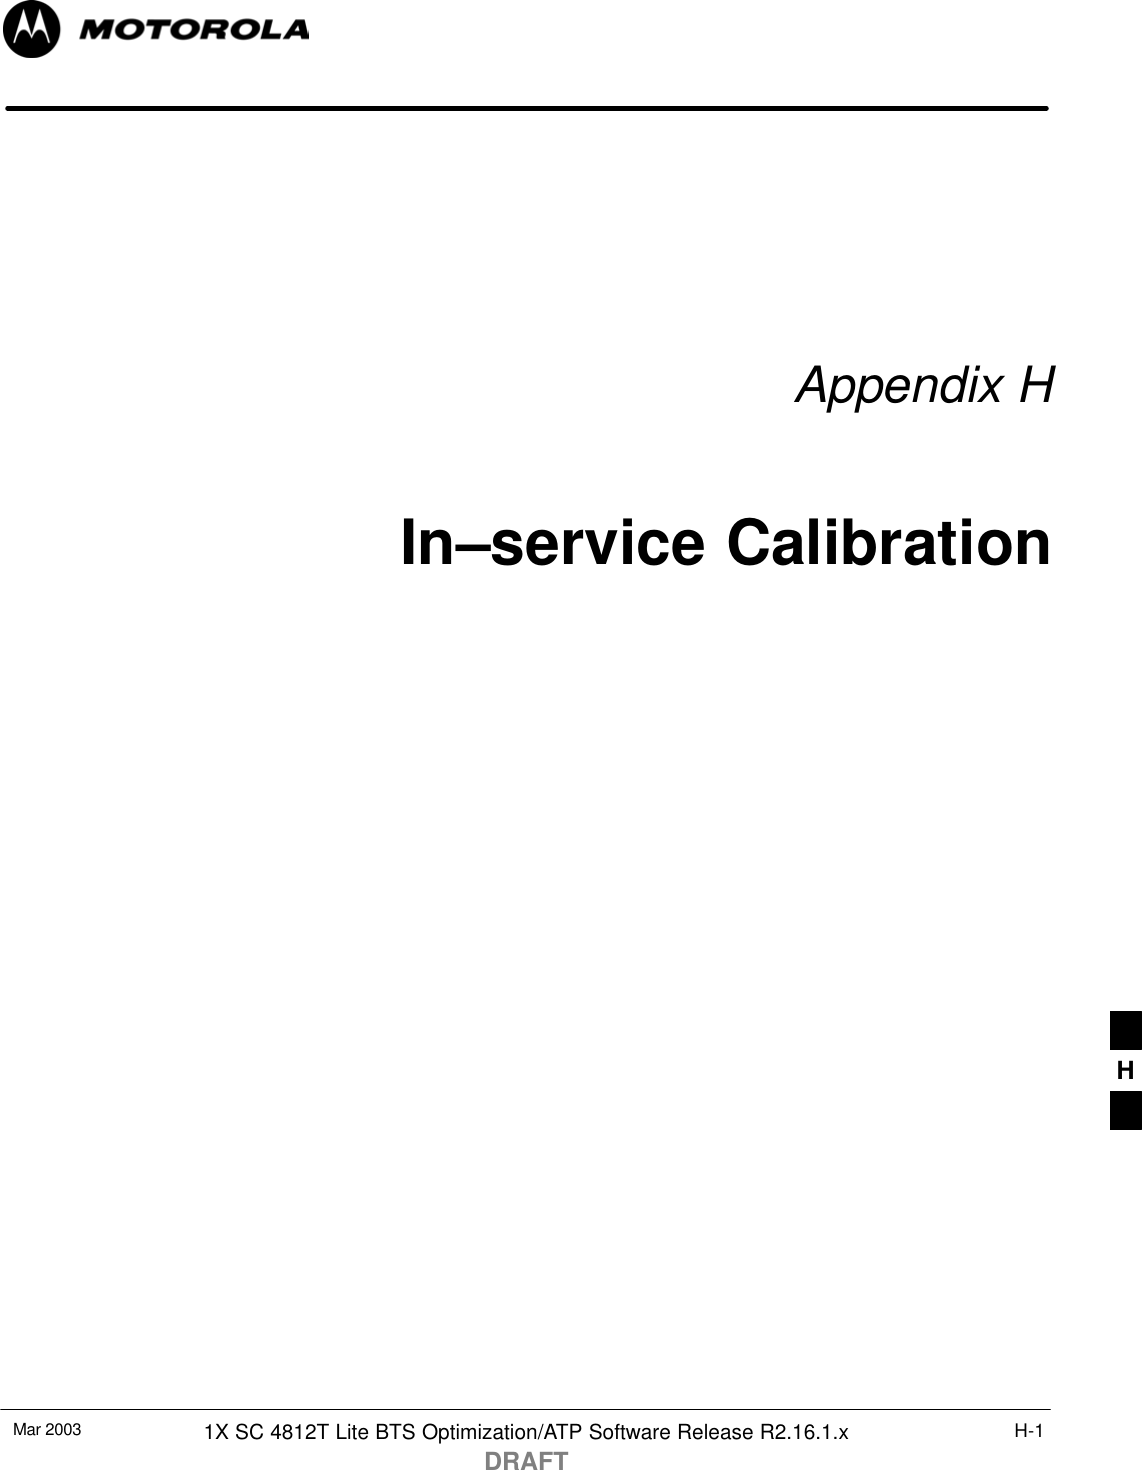 Mar 2003 1X SC 4812T Lite BTS Optimization/ATP Software Release R2.16.1.xDRAFTH-1Appendix HIn–service CalibrationH